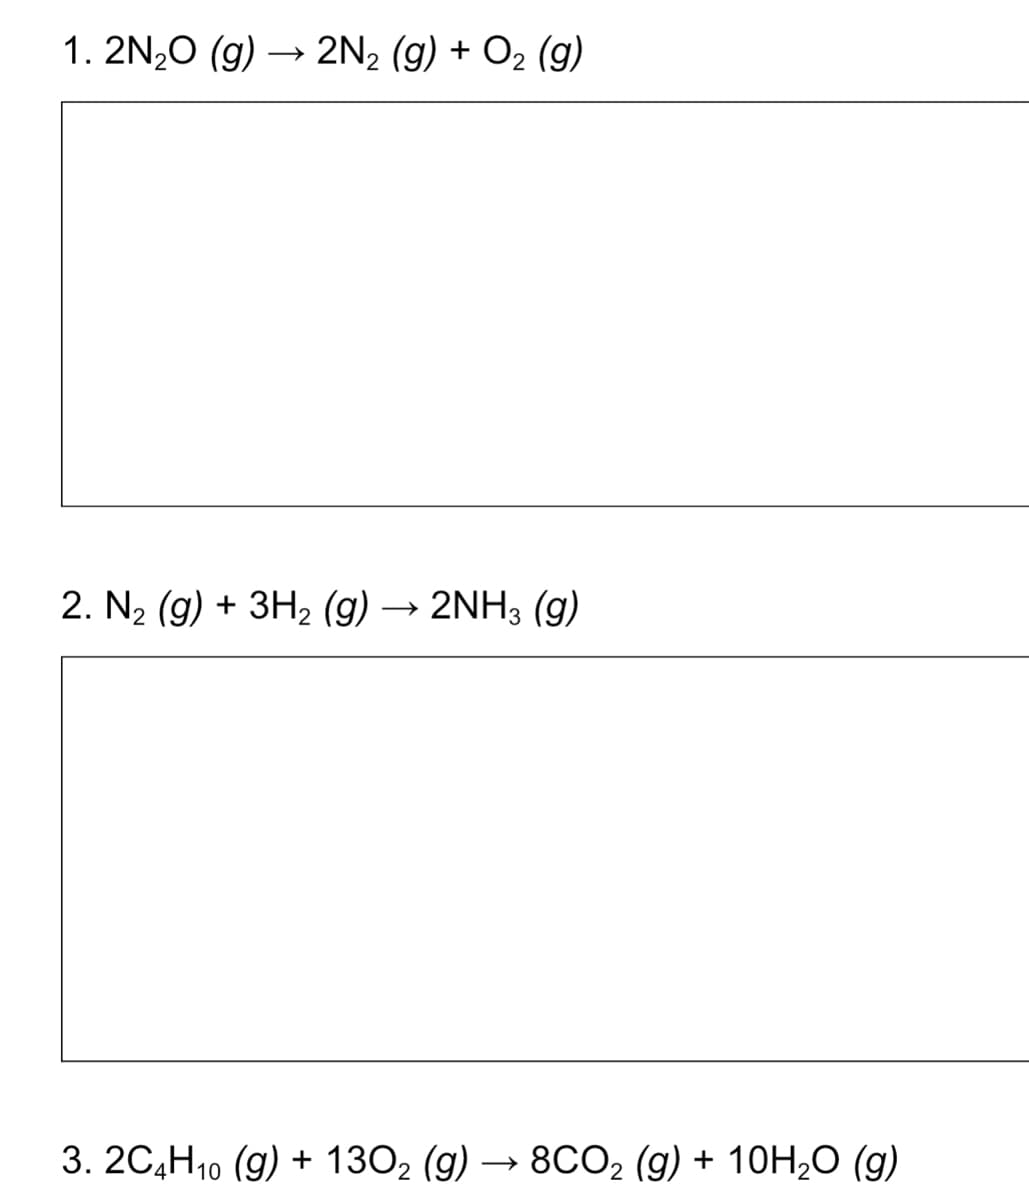 1. 2N₂O (g) → 2N₂ (g) + O₂ (9)
2. N₂ (g) + 3H₂ (g) 2NH3 (9)
2
3. 2C4H10 (g) + 130₂ (g) → 8CO2 (g) + 10H₂O (g)